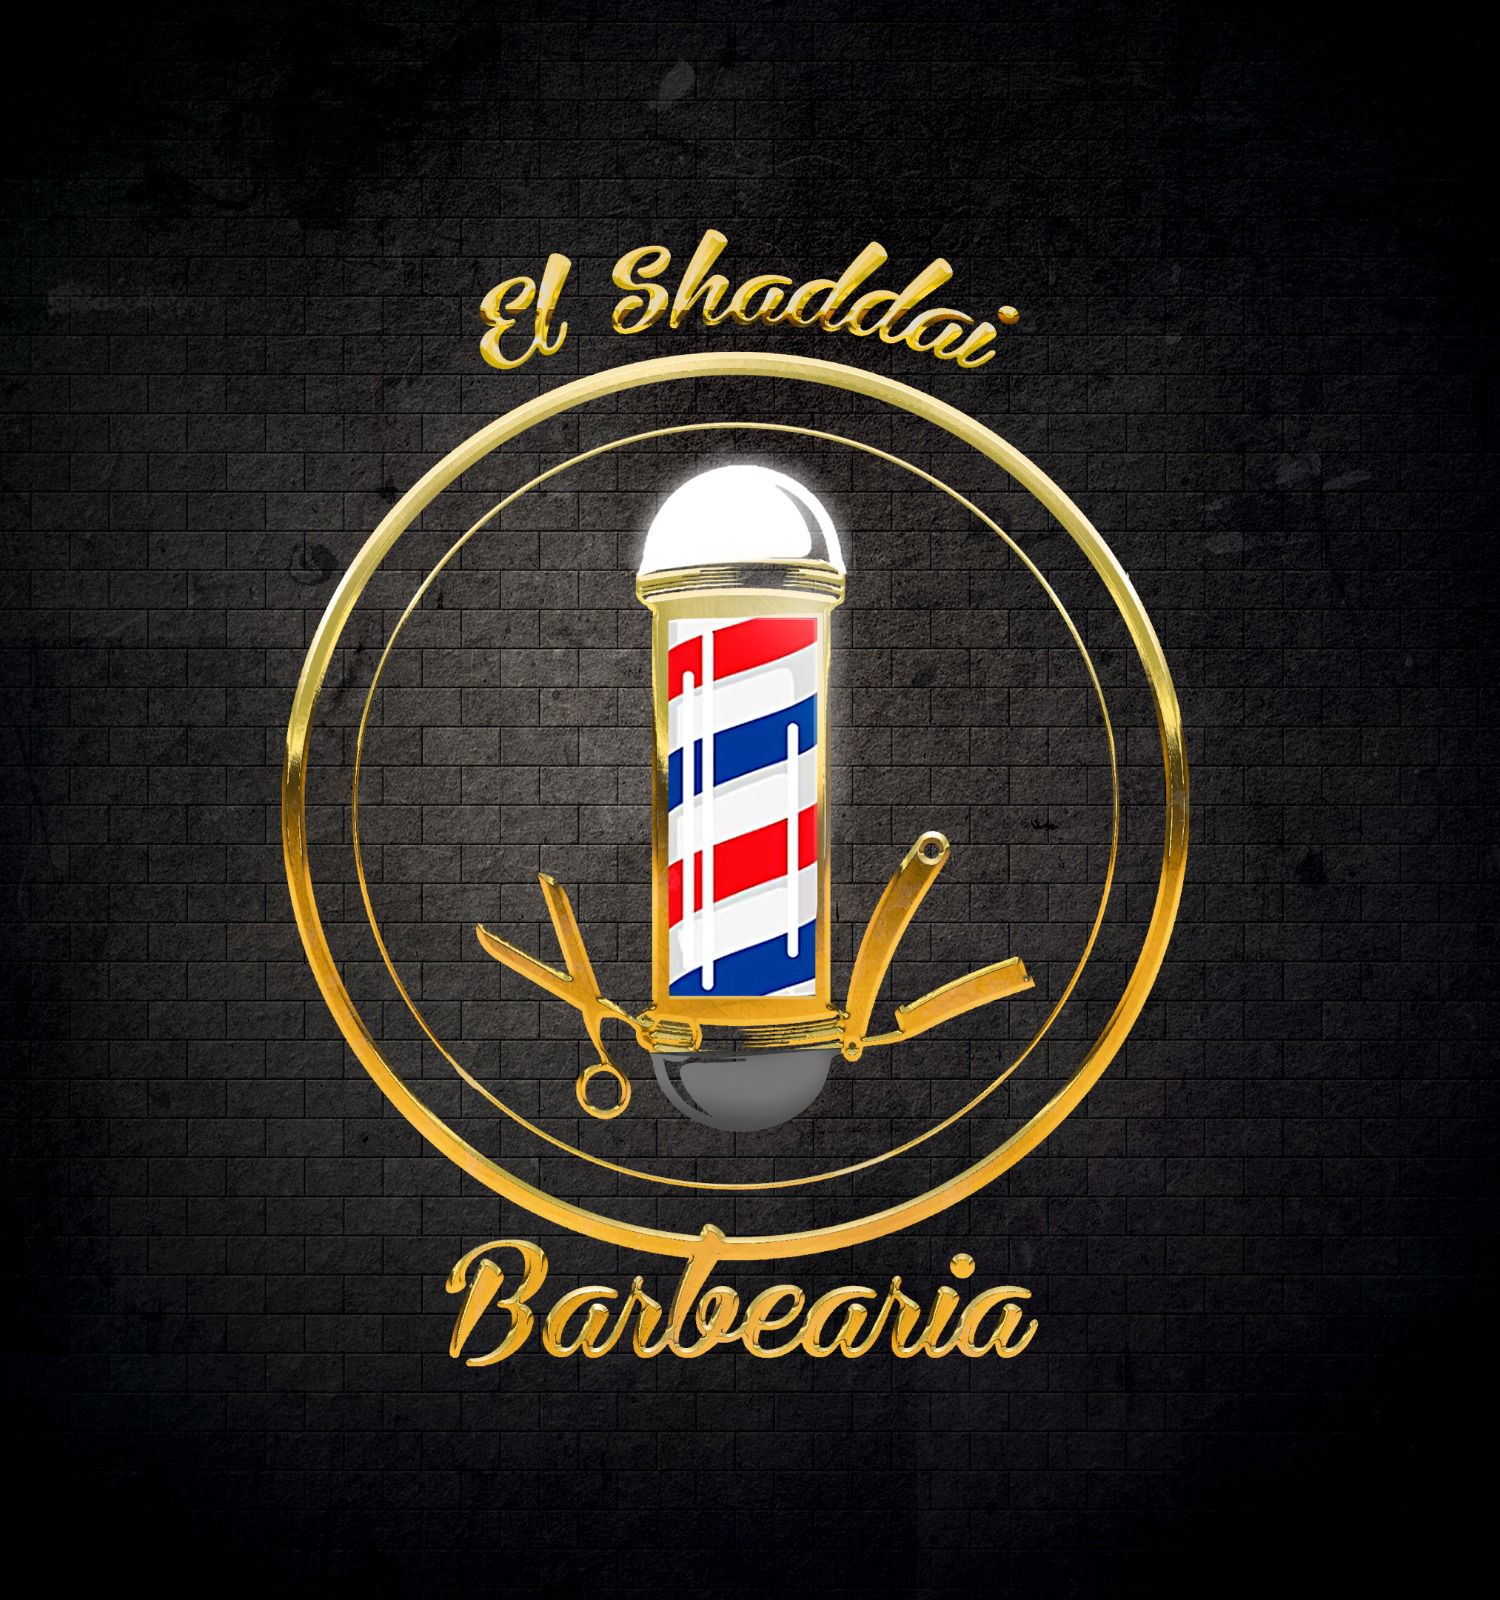 Barbearia El Shaddai